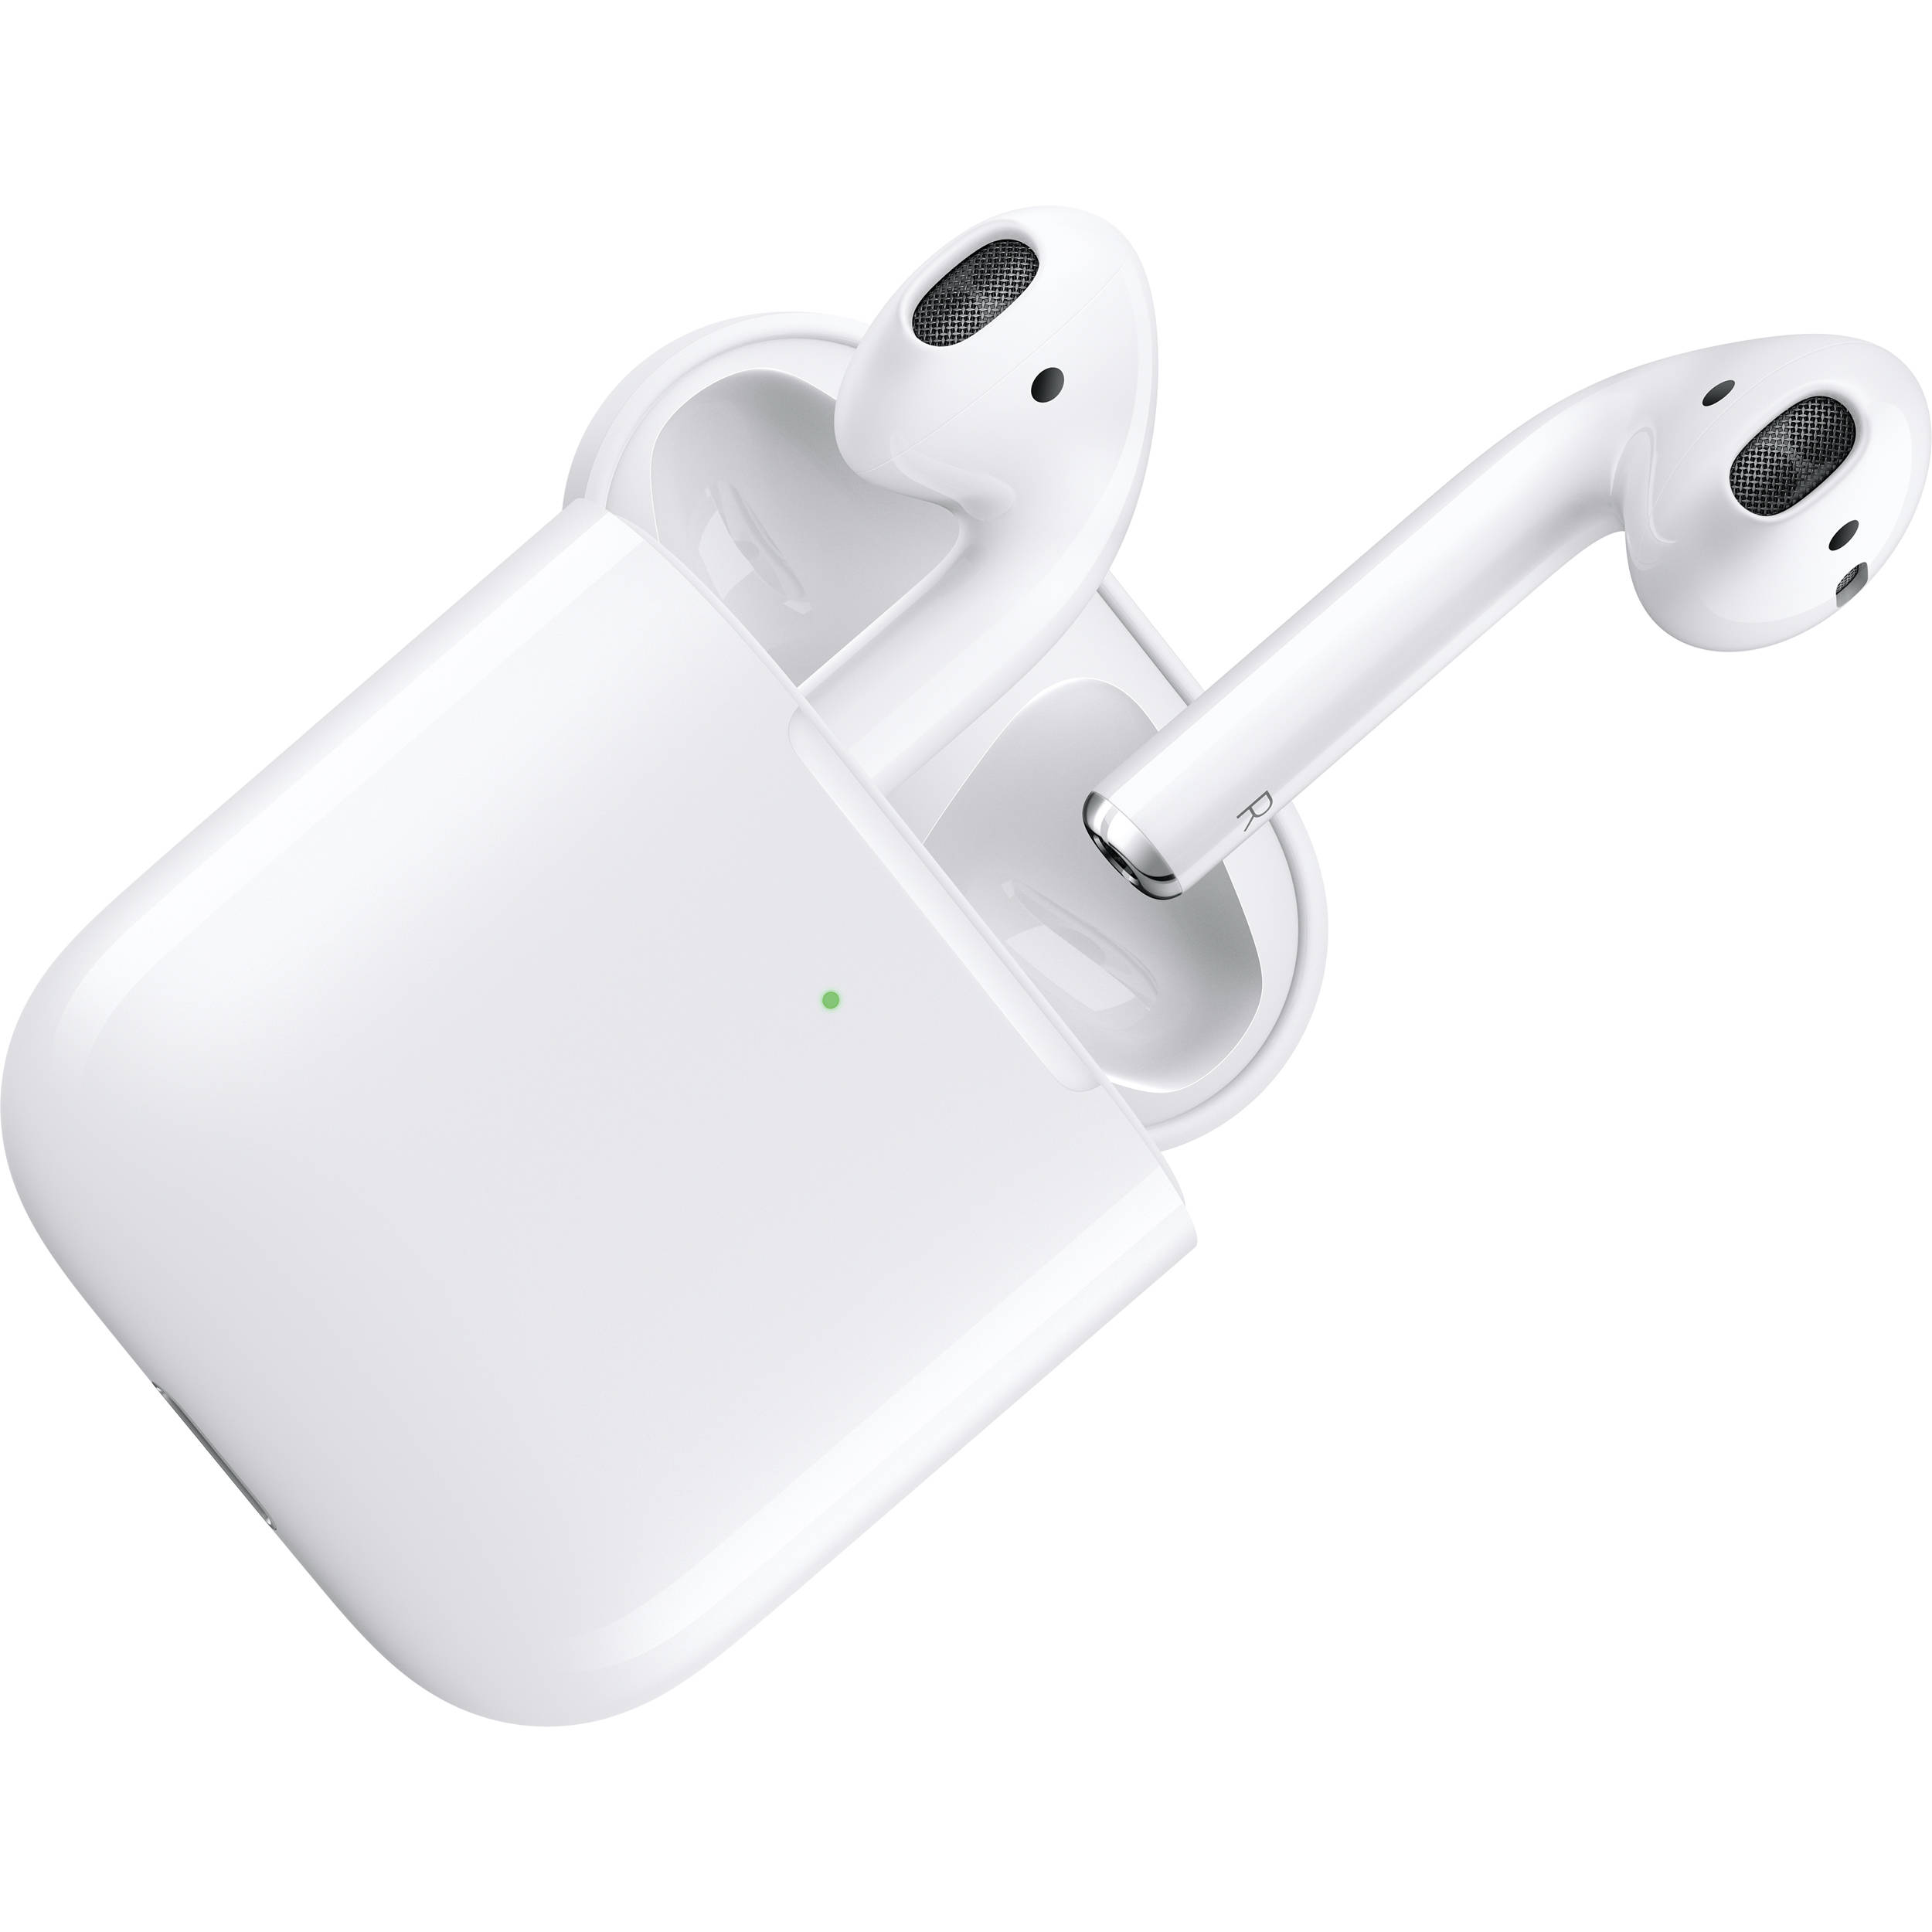 Apple Airpods vẫn là tai nghe không dây được tìm kiếm nhiều nhất